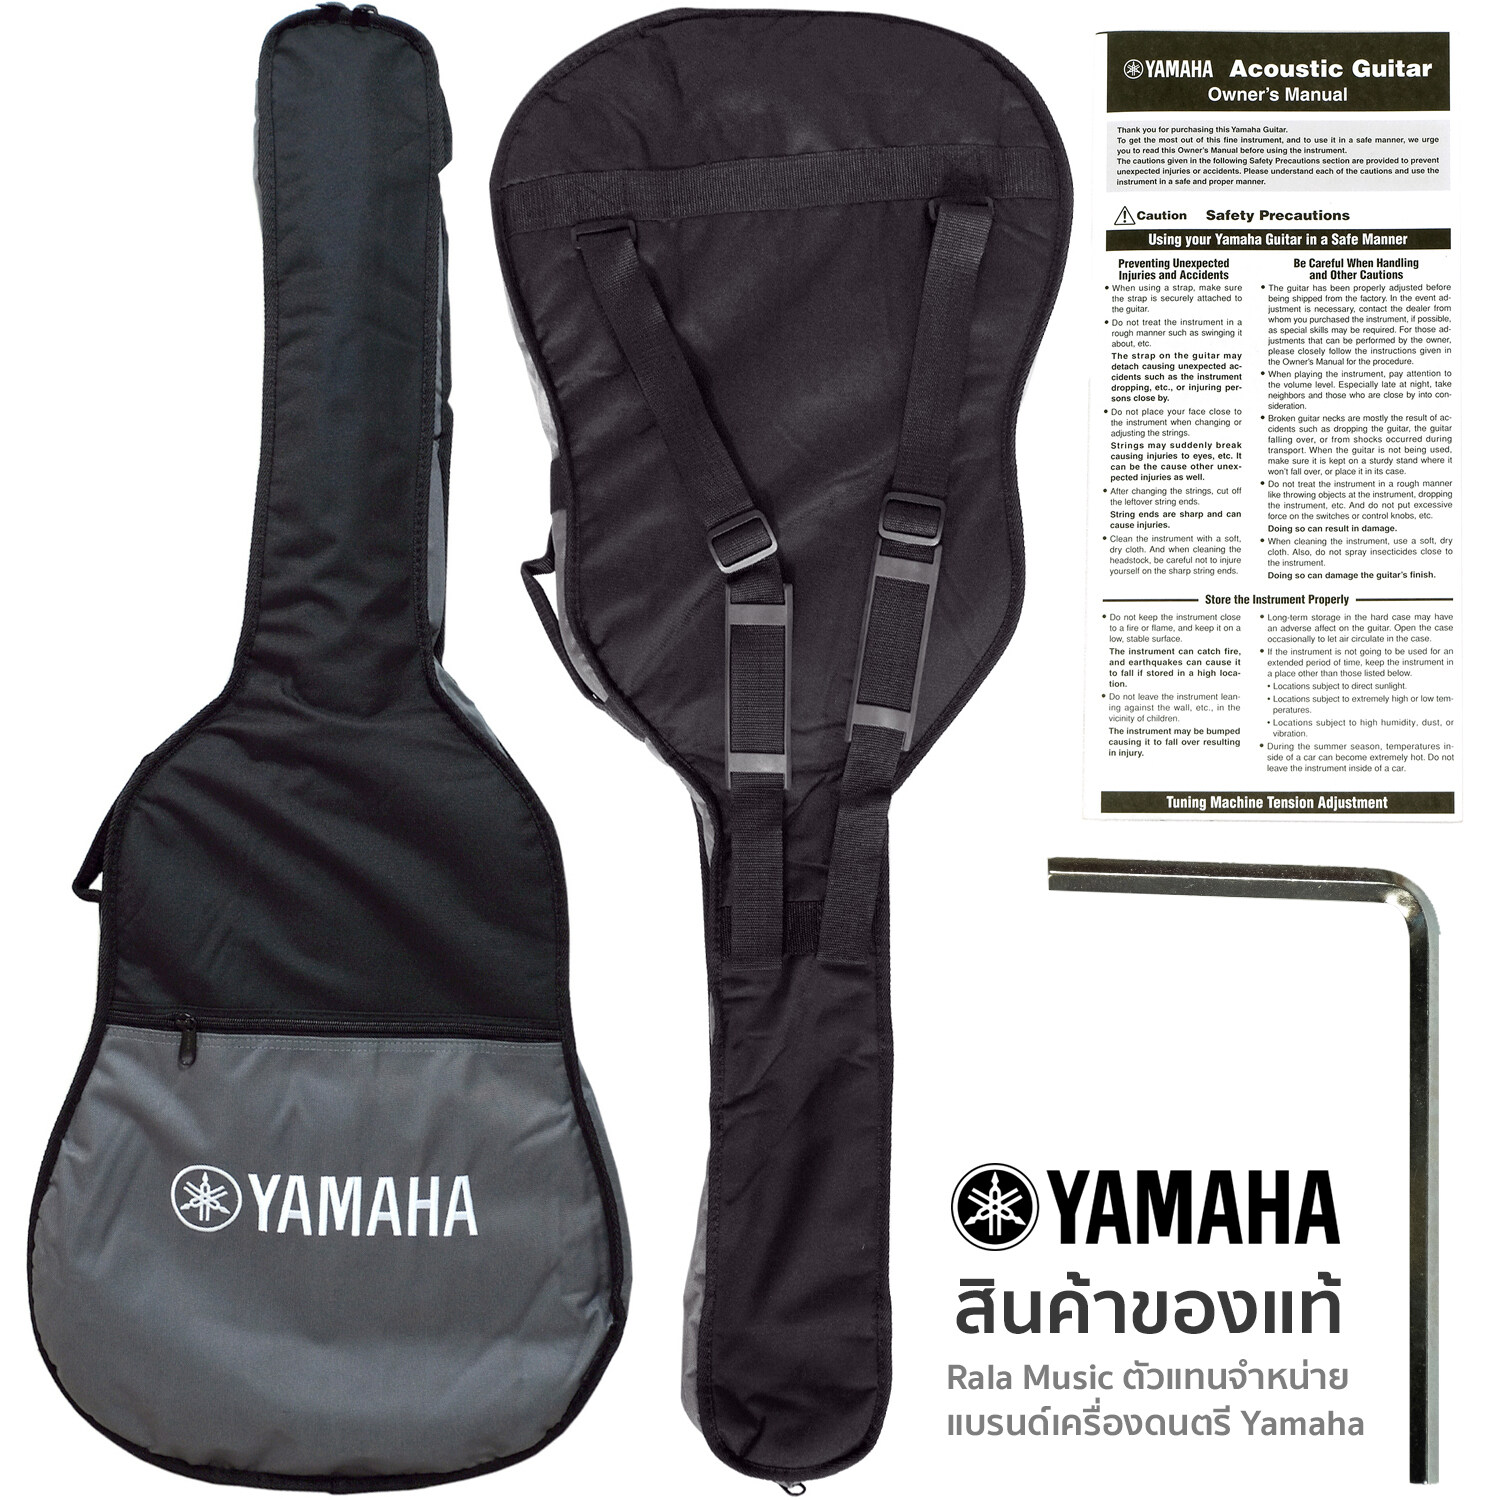 YAMAHA® F310 Acoustic Guitar กีตาร์โปร่ง 41 นิ้ว ไม้สปรูซ/เมอรันติ รุ่น F310 + แถมฟรีกระเป๋ากีตาร์ของแท้ Yamaha ** ขายดีที่สุด **